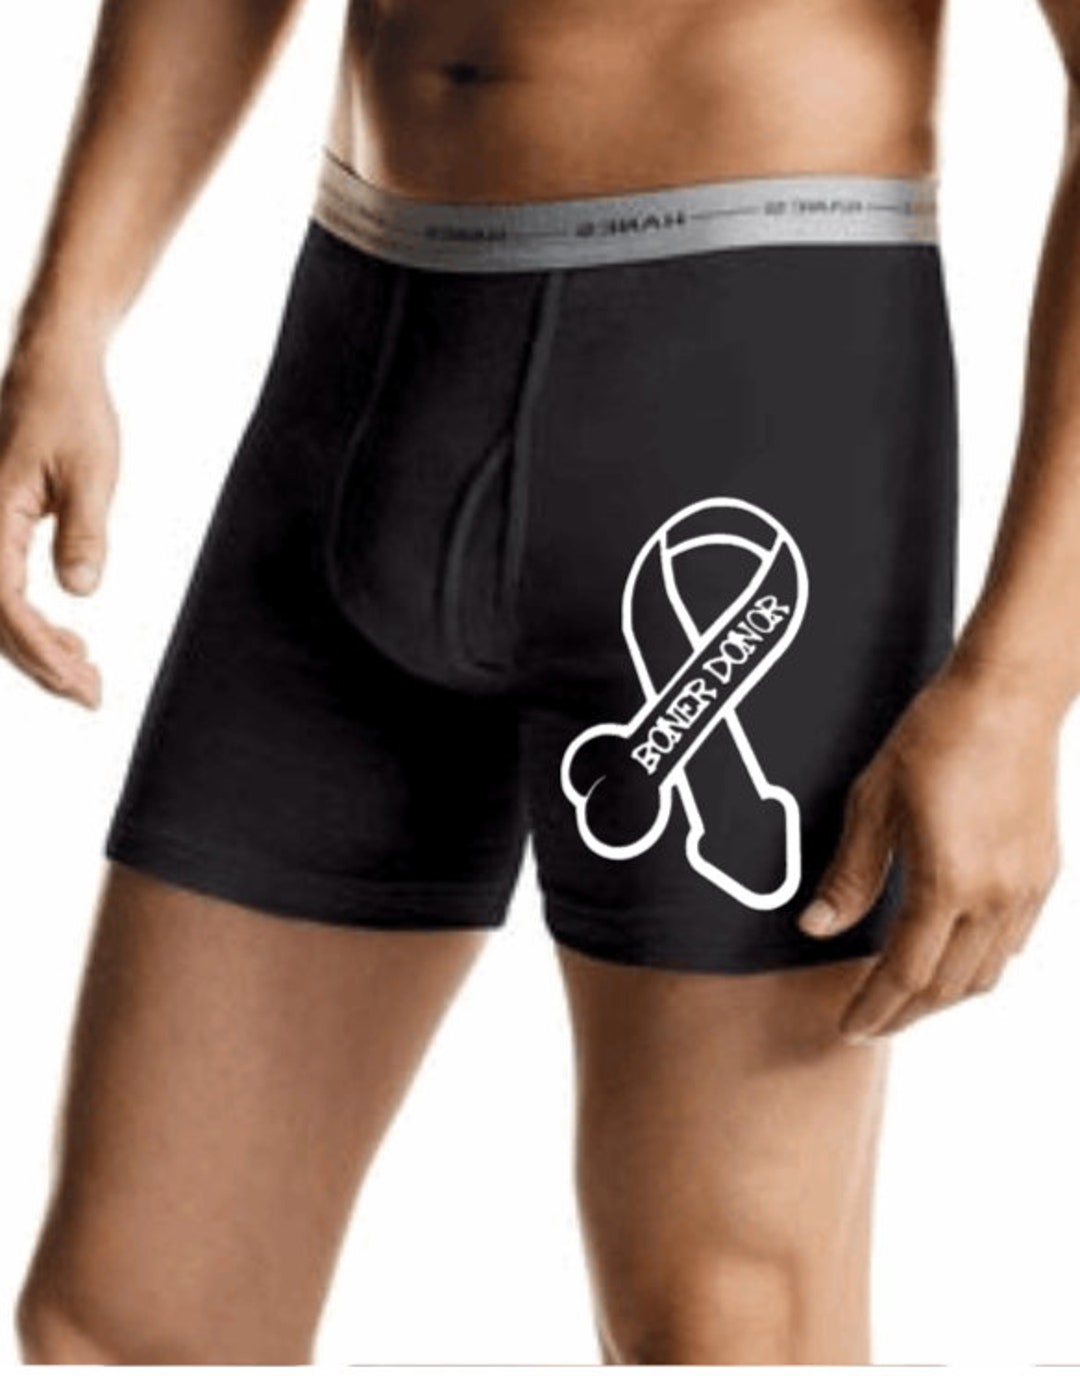 Men's Hanes Underwear Briefs; Valentine Kisses - New Photo Soon